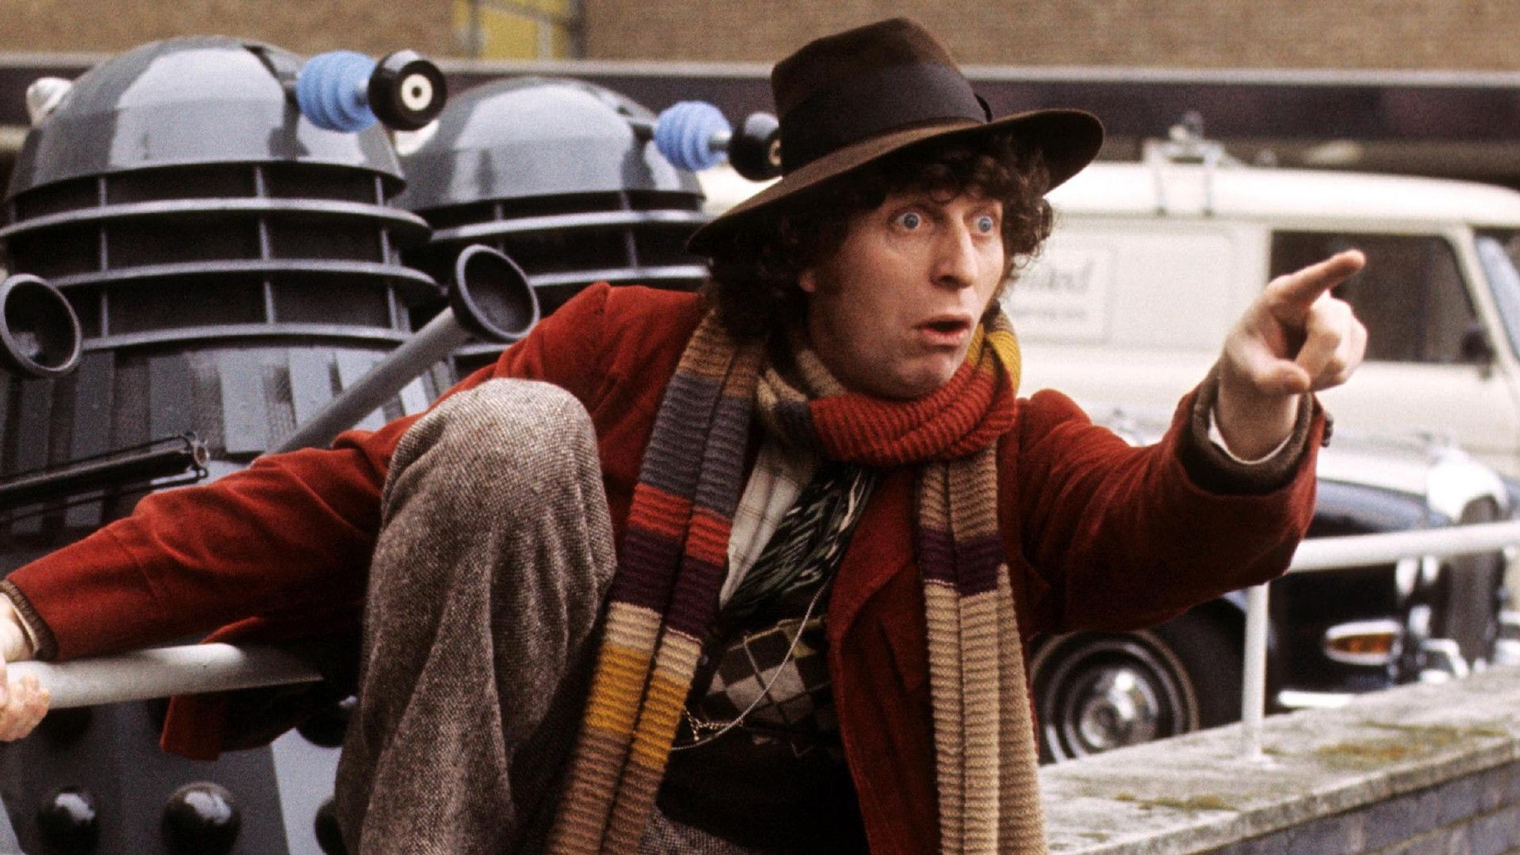 Длинный цветной шарф Четвертого Доктора до сих пор считается важнейшим атрибутом любого фаната сериала